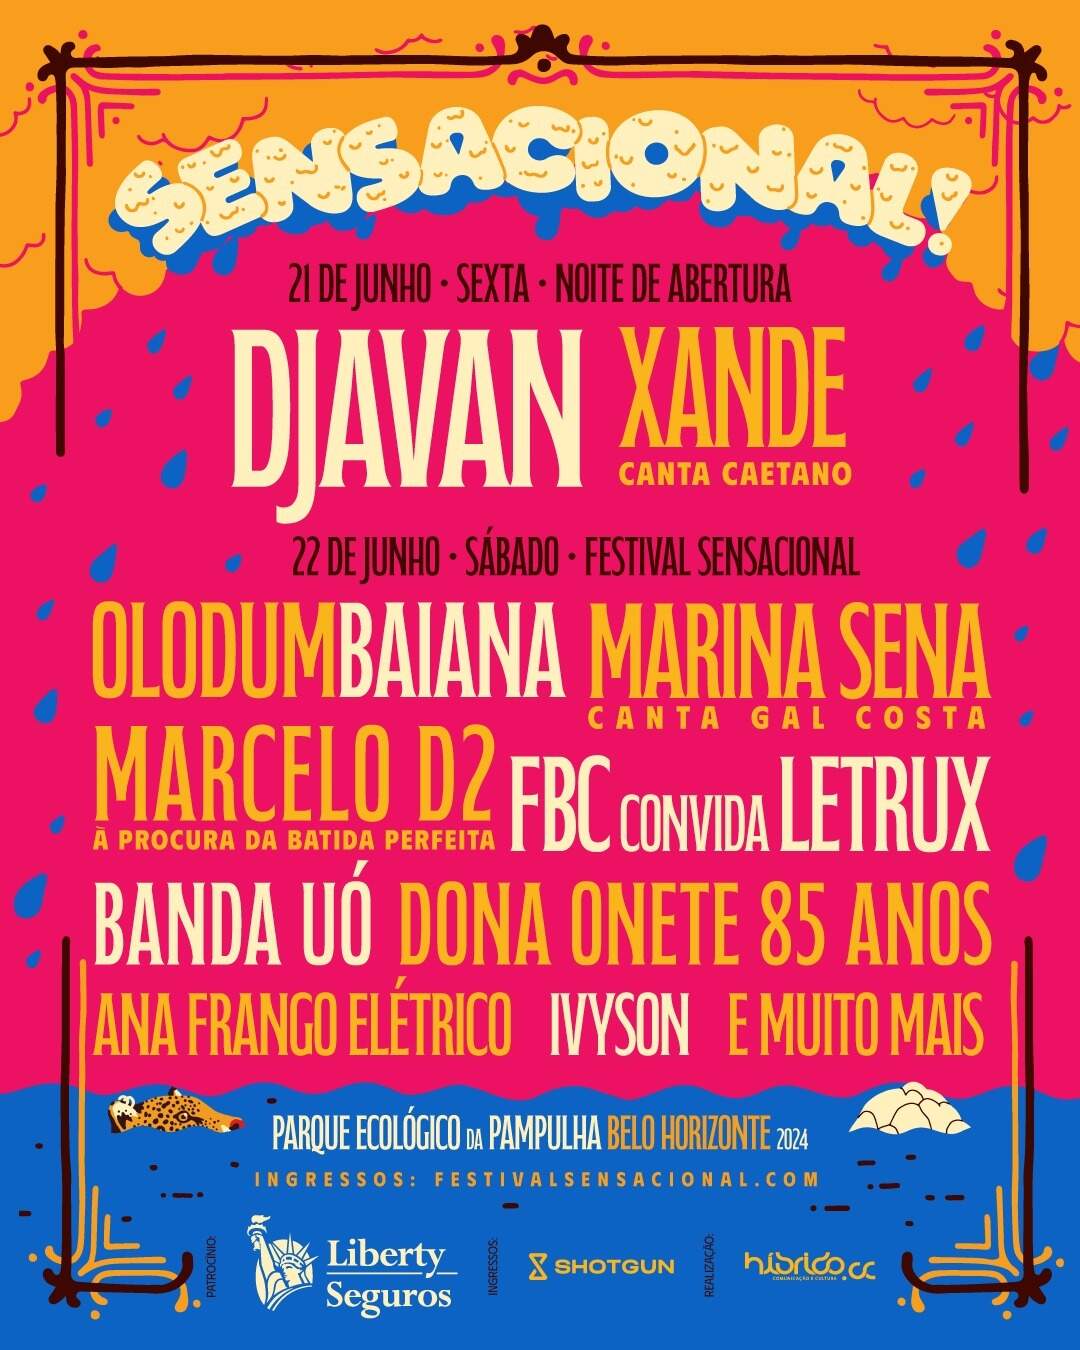 Festival Sensacional acontece nos dias 21 e 22 de junho (Foto: Divulgação)